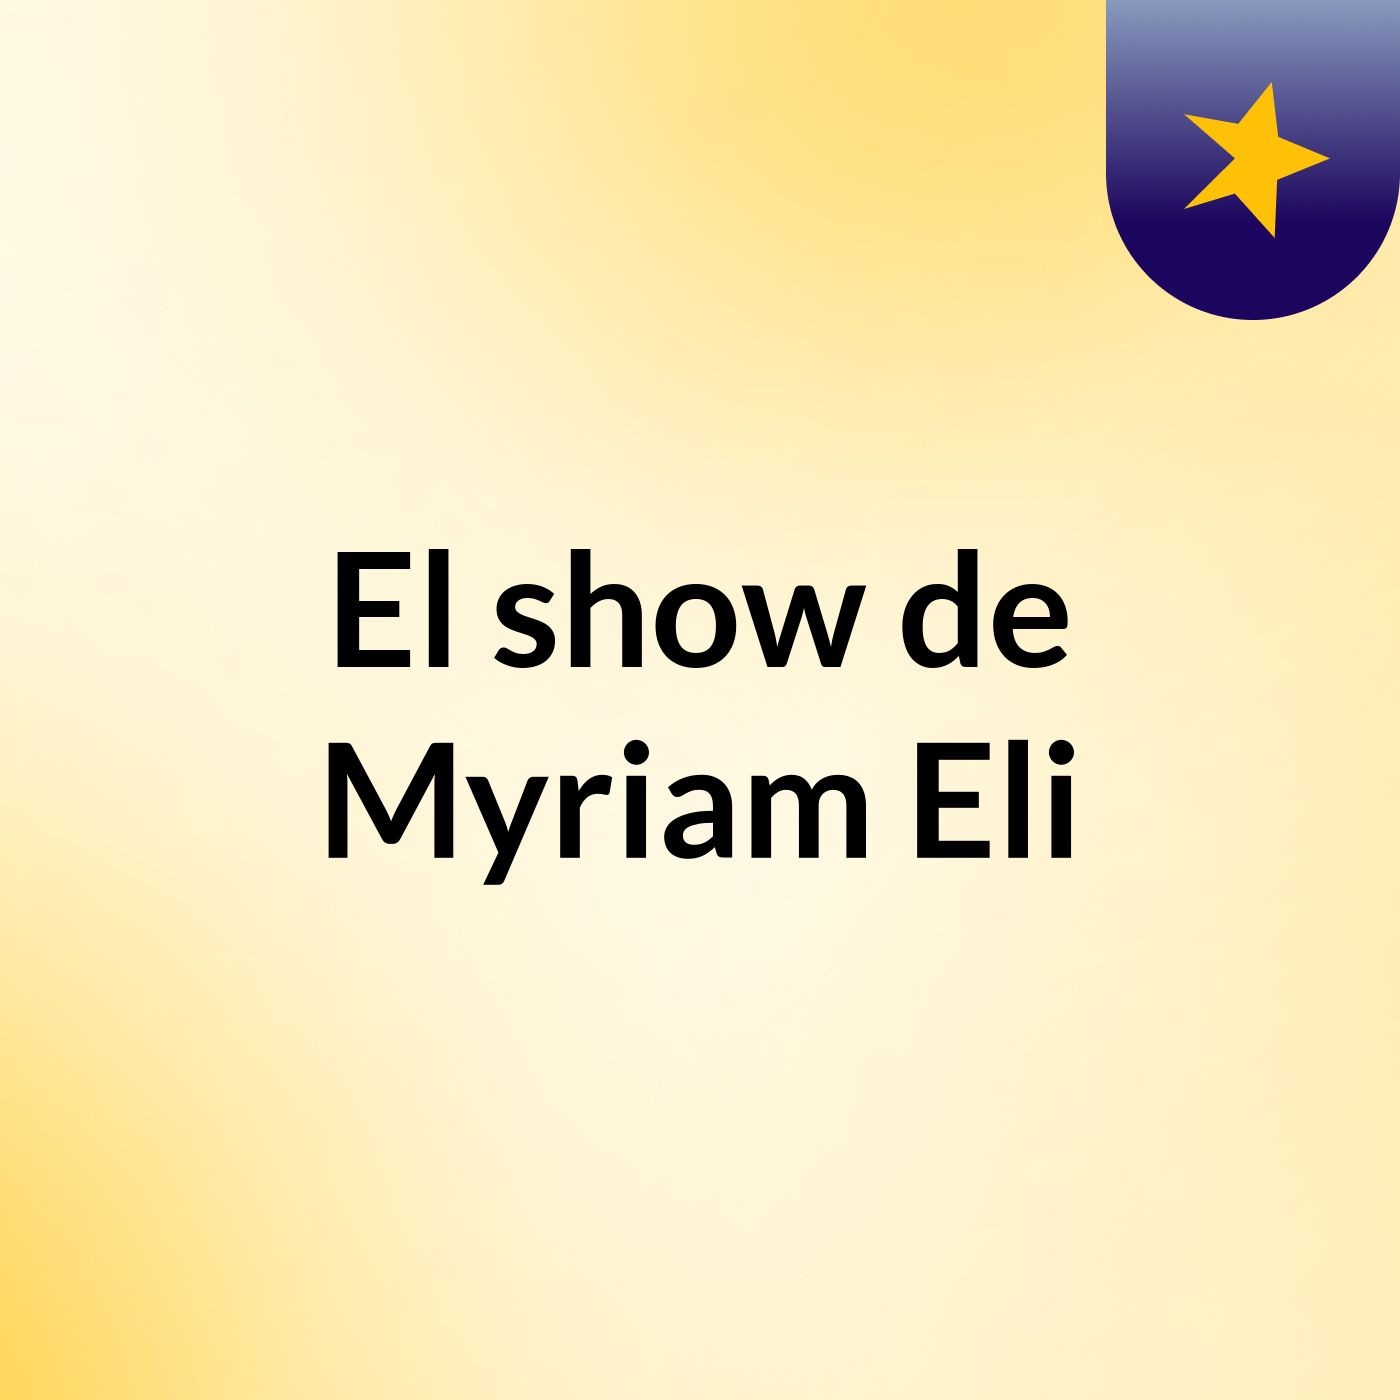 El show de Myriam Eli